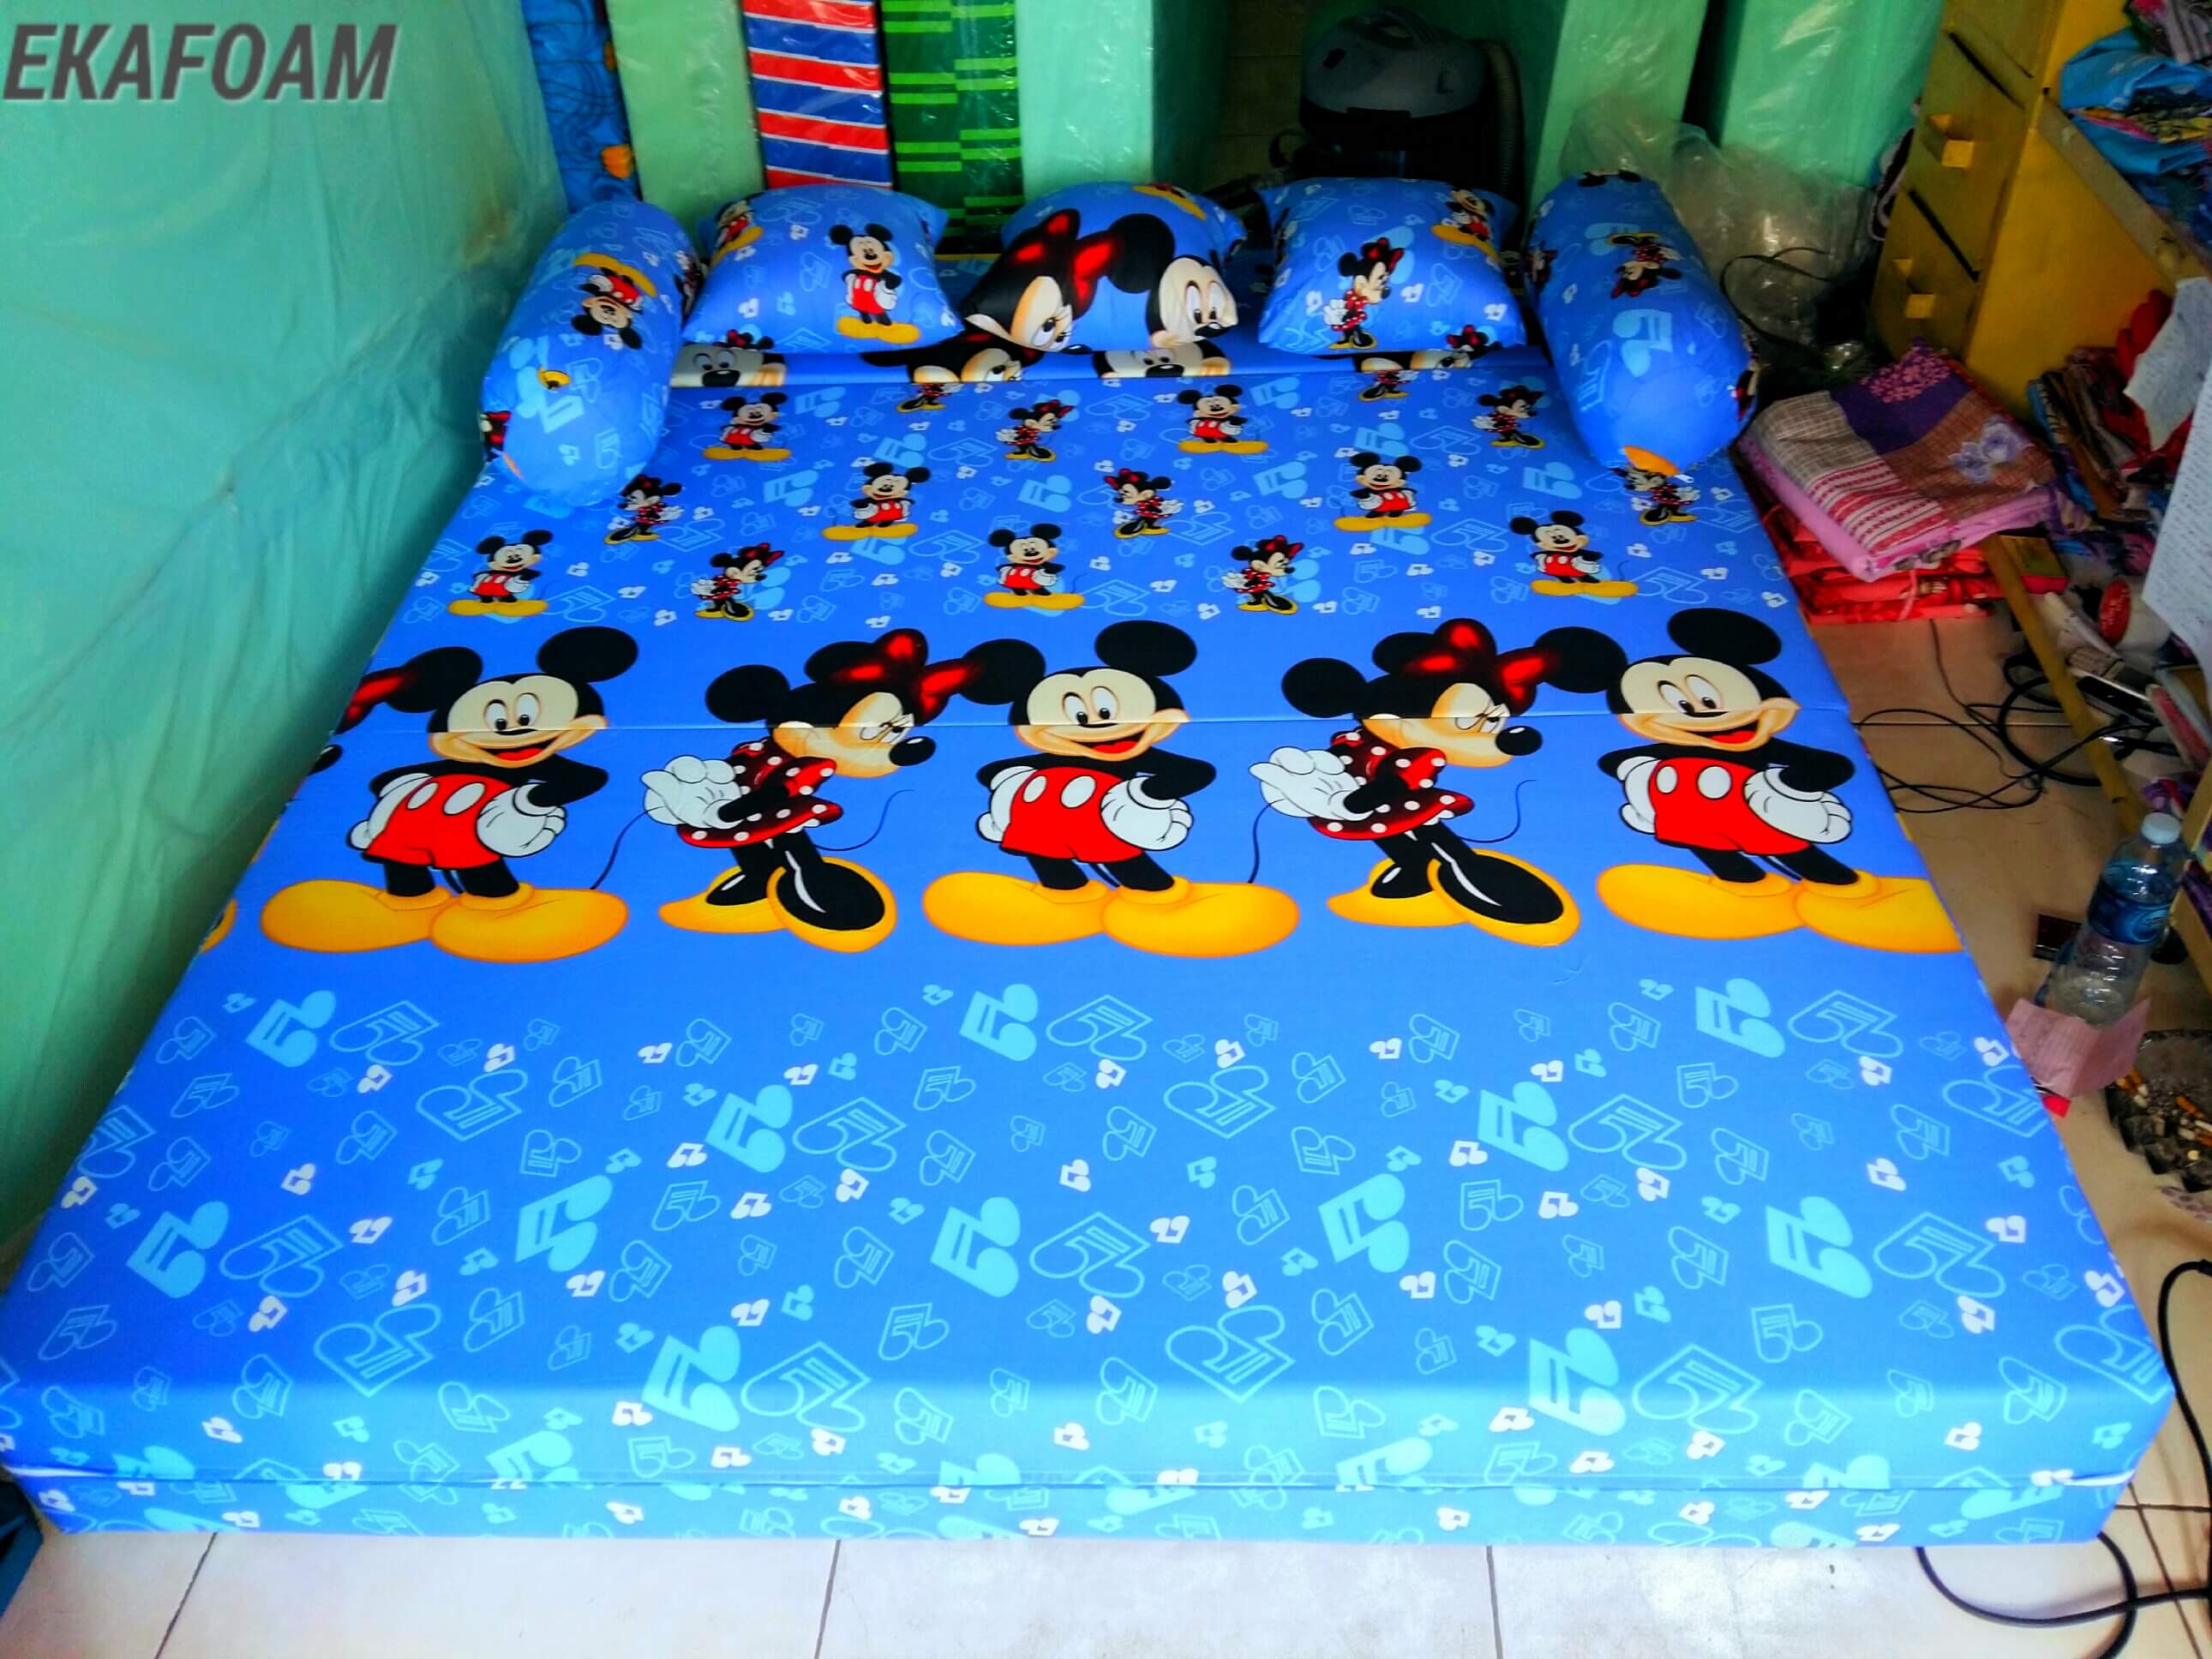 Gambar Sofa Bed Inoac Motif Doraemon  Arsihome